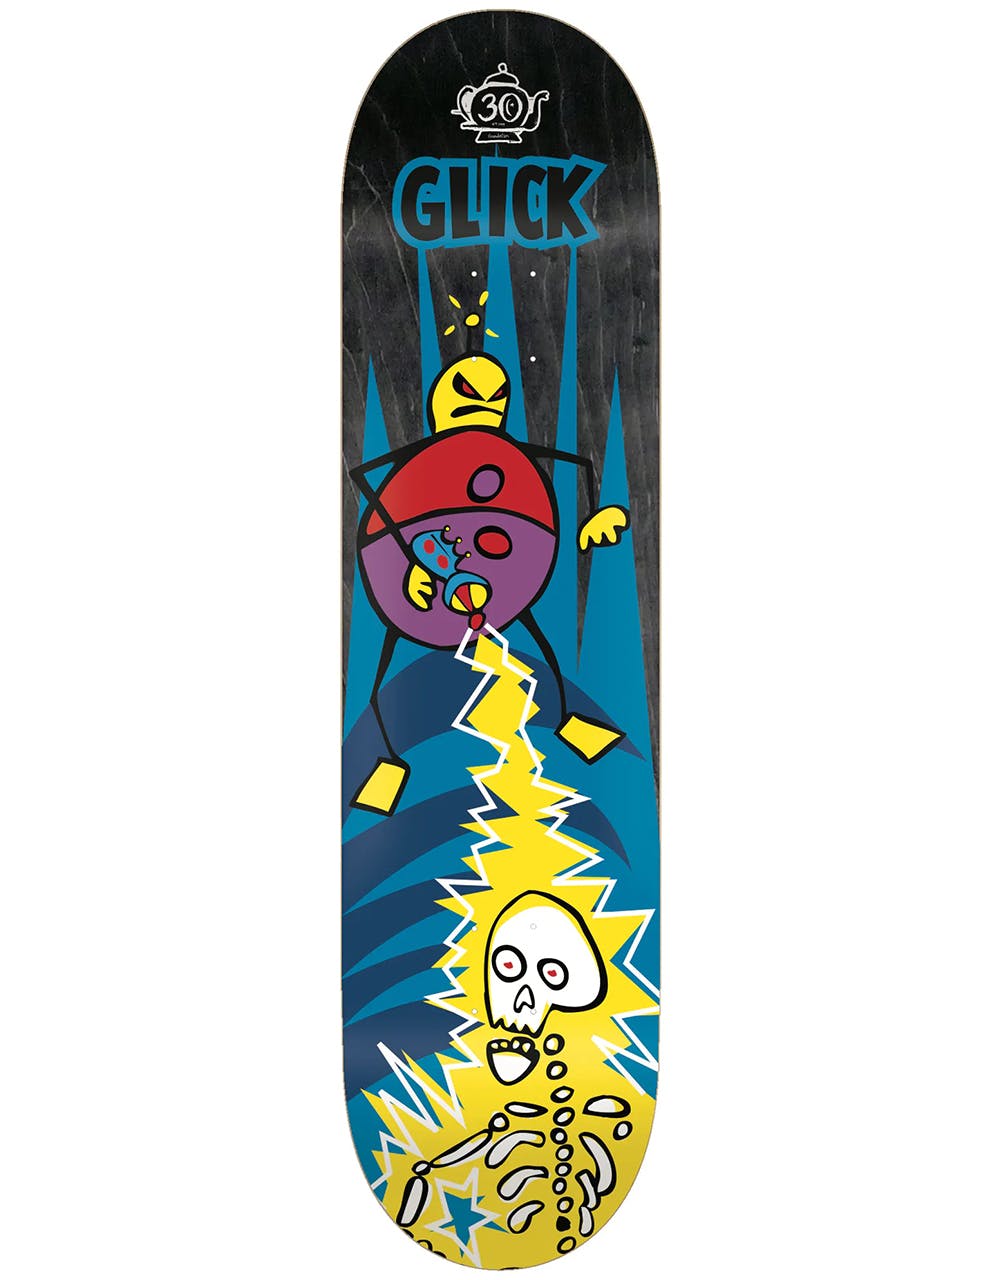 Foundation Glick Phaser Skateboard Deck - 8.25"